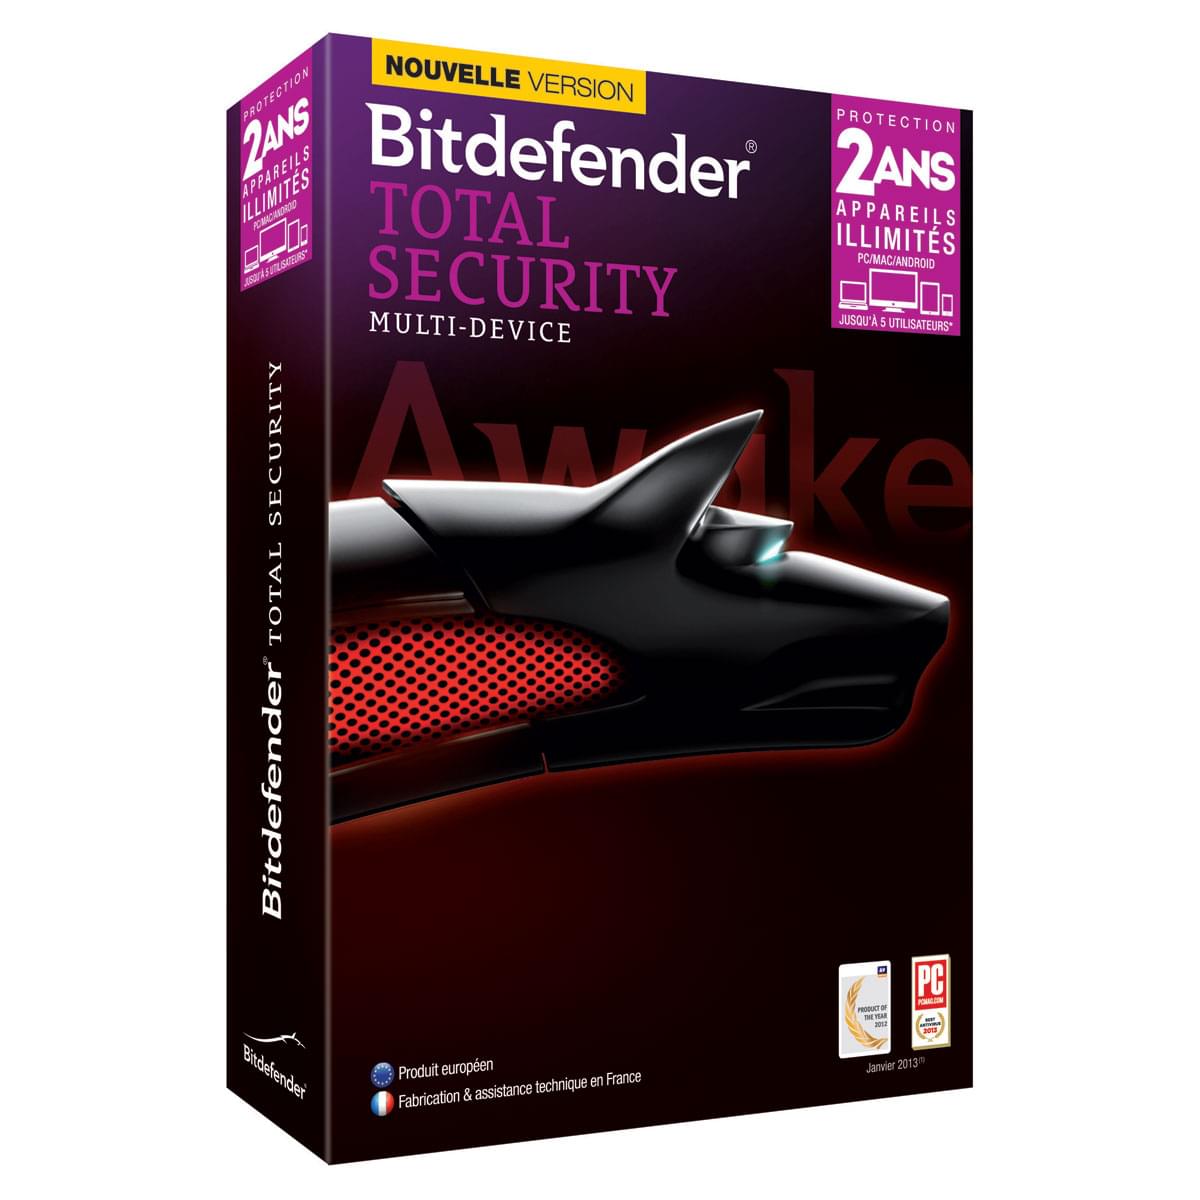 Logiciel sécurité Bitdefender Total Security 2014 - 2 Ans / Appareils illimités